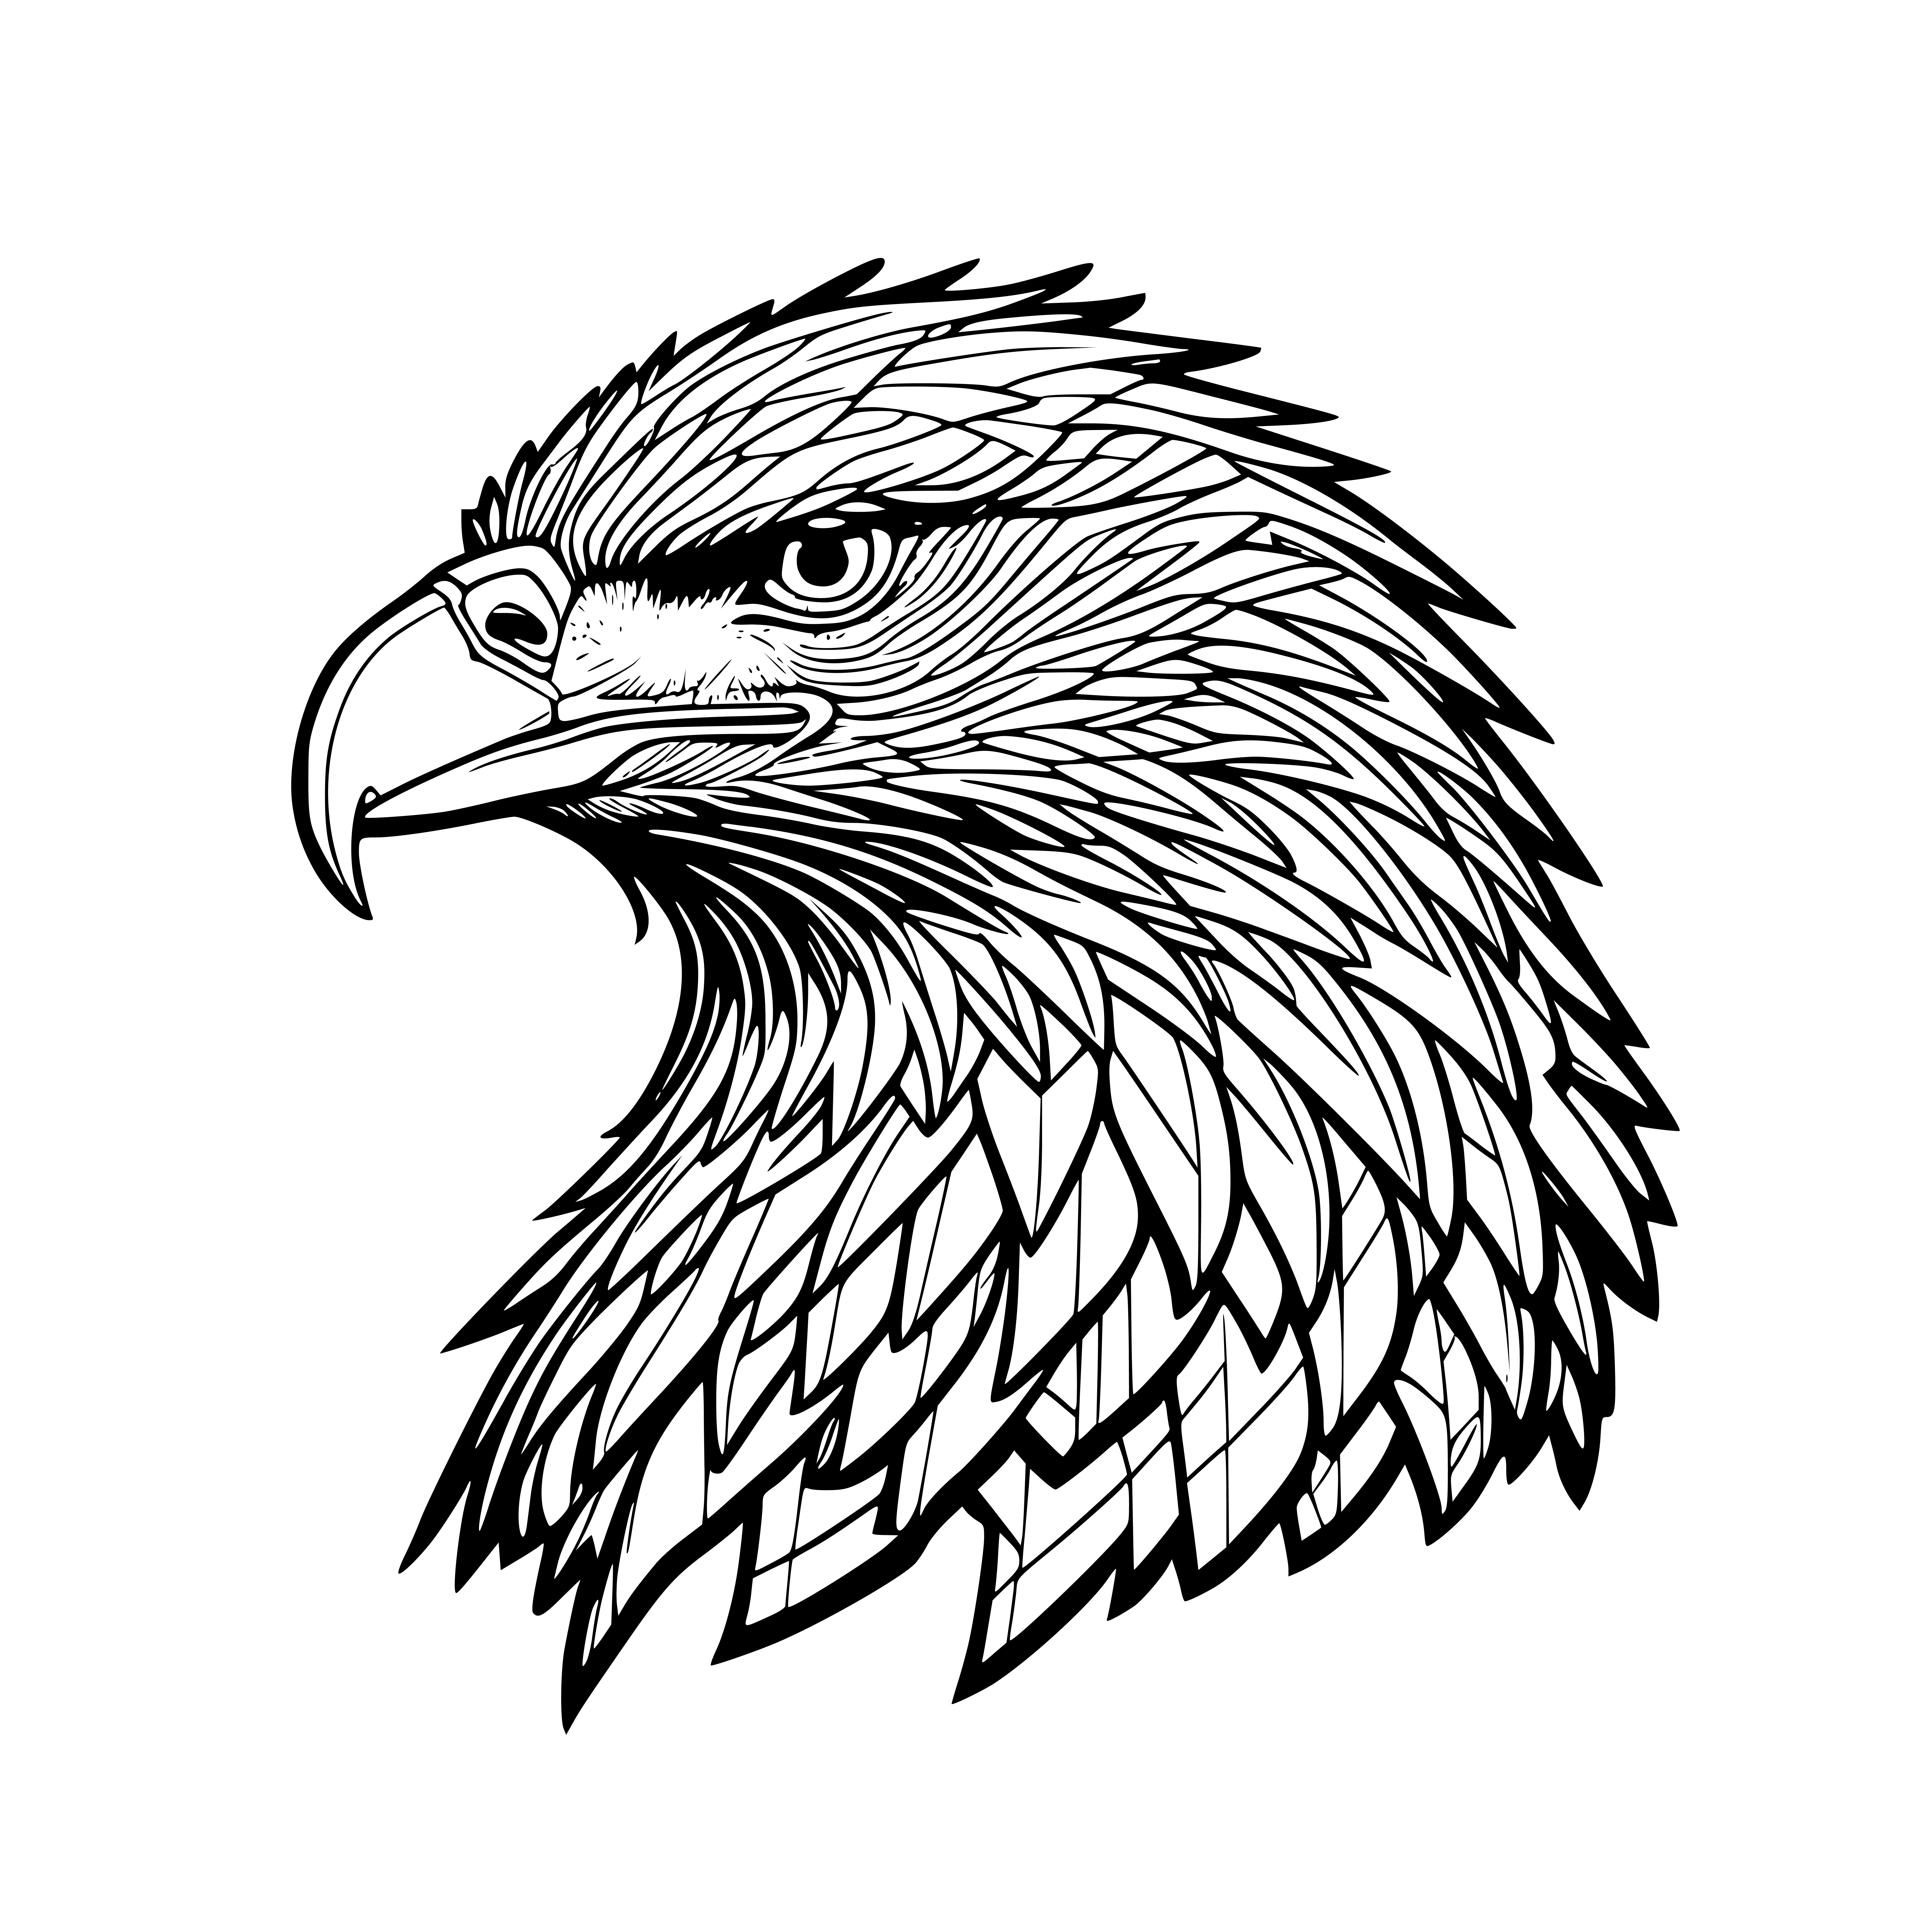 Eagle head silhouette design